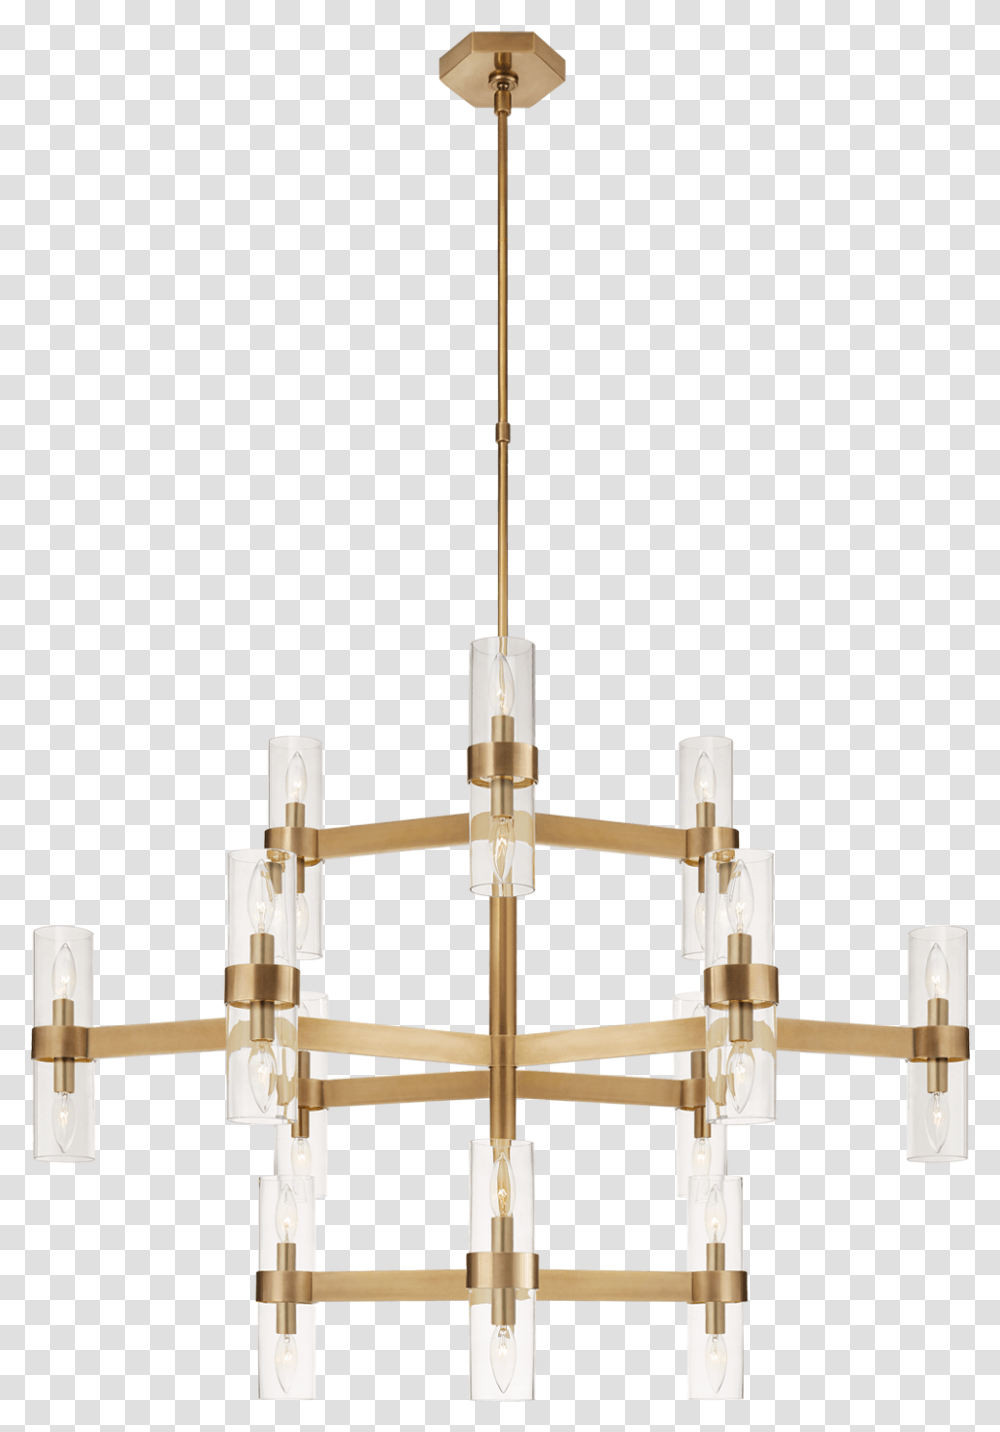 Chandelier, Lamp, Utility Pole Transparent Png